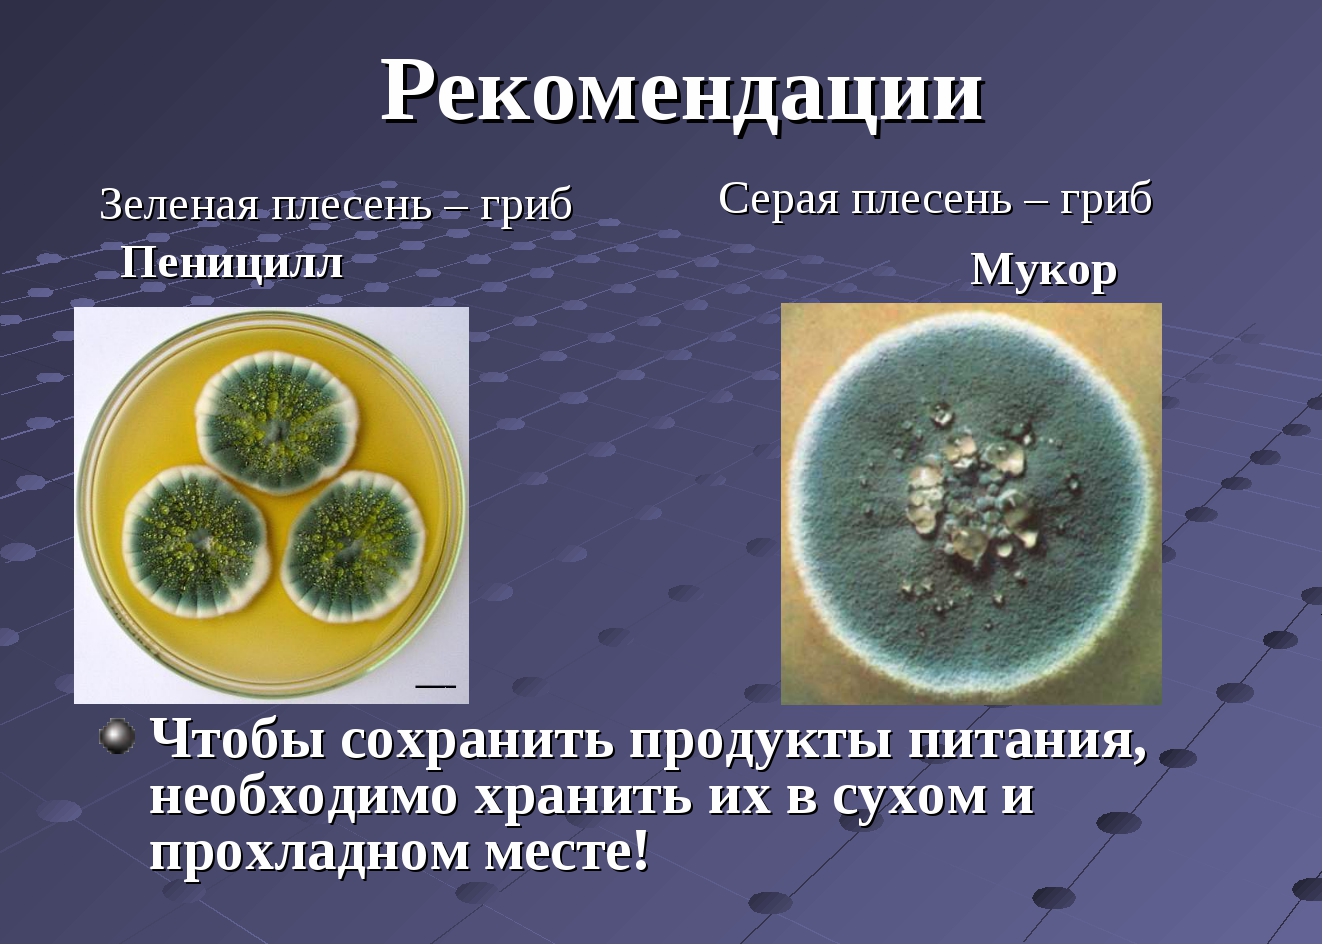 Пеницилл и бактерии. Зеленая плесень пеницилл. Зеленая плесень у человека. Гриб пеницилл питается. Пеницилл на лимоне.